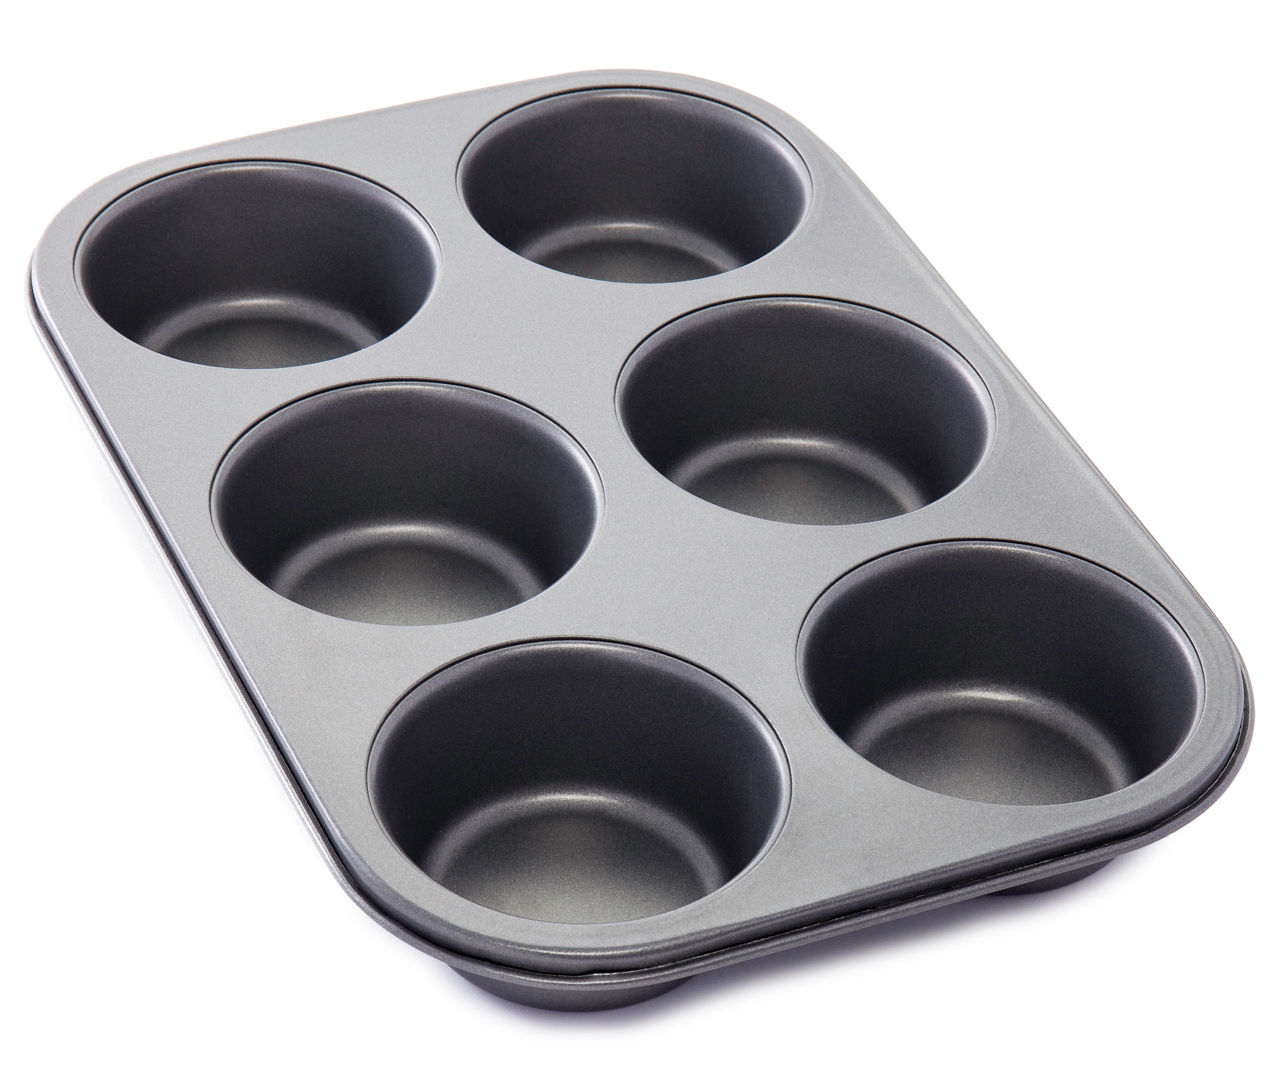 6-Cup Jumbo Muffin Pan